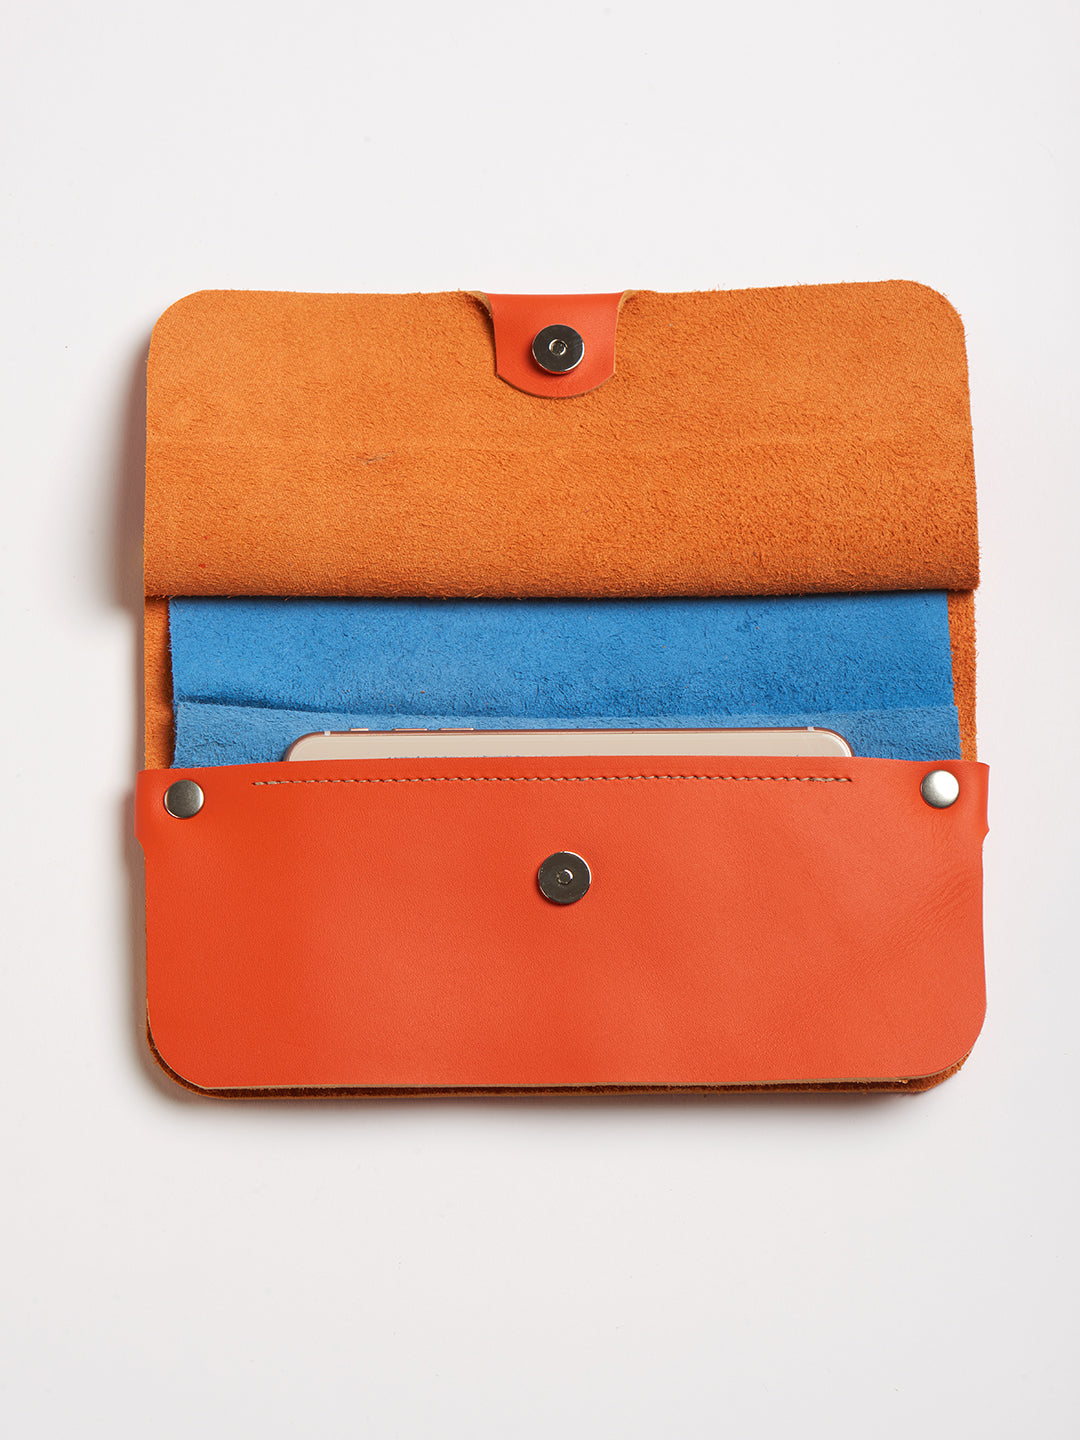 The Novella bag - Papaya orange leather